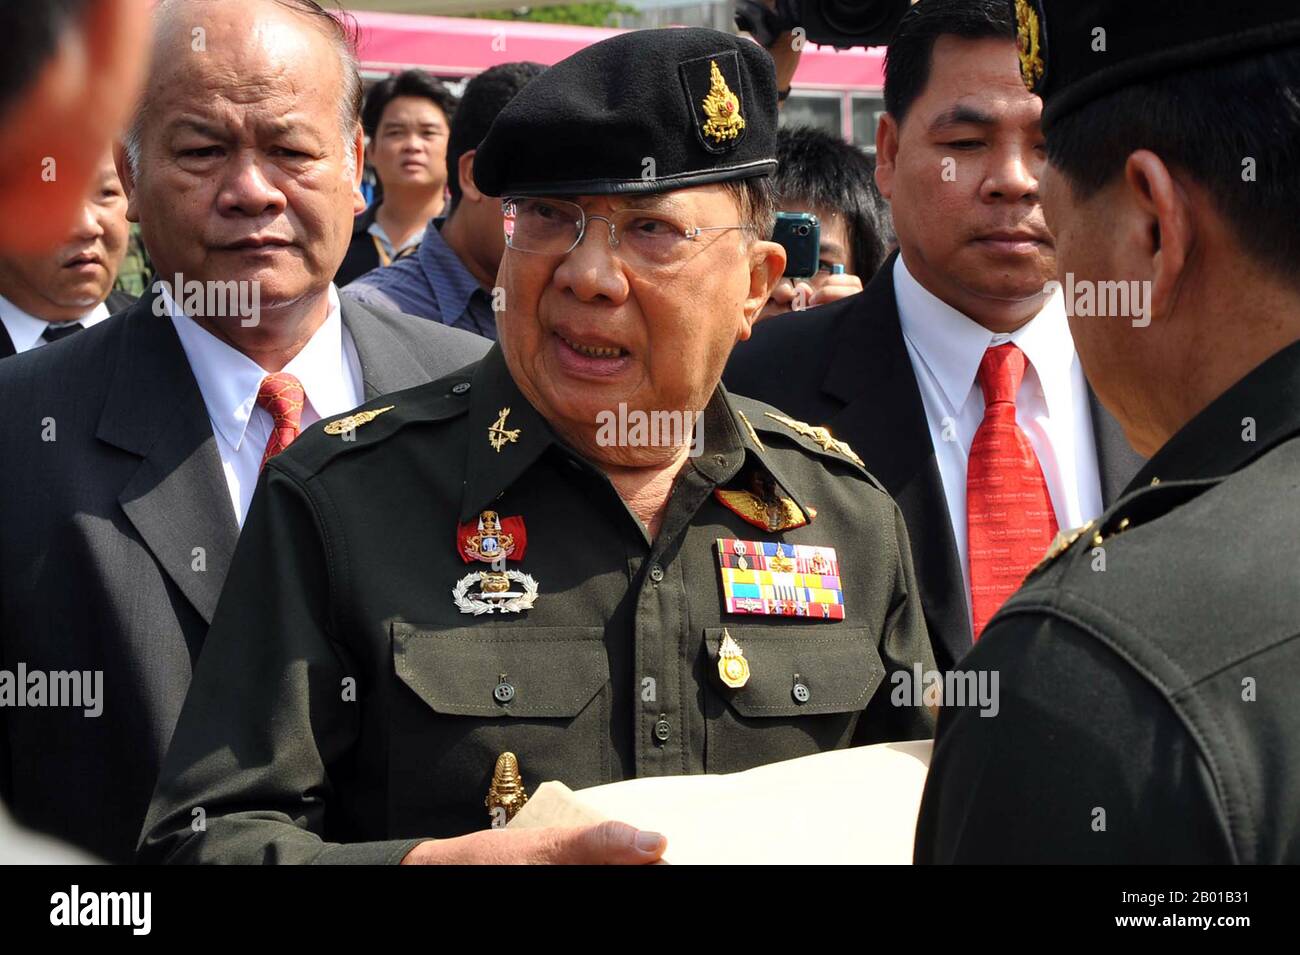 Thailandia: Generale Chavalit Yongchaiyudh (1932 -), primo Ministro della Thailandia (r. 1996-1997). Foto di Peerapat Wimonrangcarat/Govt. Di Thailandia, 2010. Il generale Chavalit Yongchaiyudh, noto anche come ''Grande Jiew'', è un politico tailandese e generale in pensione. È stato il primo Ministro della Thailandia del 22nd dal 1996 al 1997. È di discendenza sino-thailandese ed etnica del Lao. Chavalit iniziò la sua carriera politica nel 1988 nell'amministrazione di Chatichai Choonhavan. Il suo New Aspiration Party ha vinto il maggior numero di seggi nelle elezioni del 1996 e ha assunto la carica di primo Ministro, ma la crisi finanziaria asiatica del 1997 lo ha costretto a dimettersi. Foto Stock